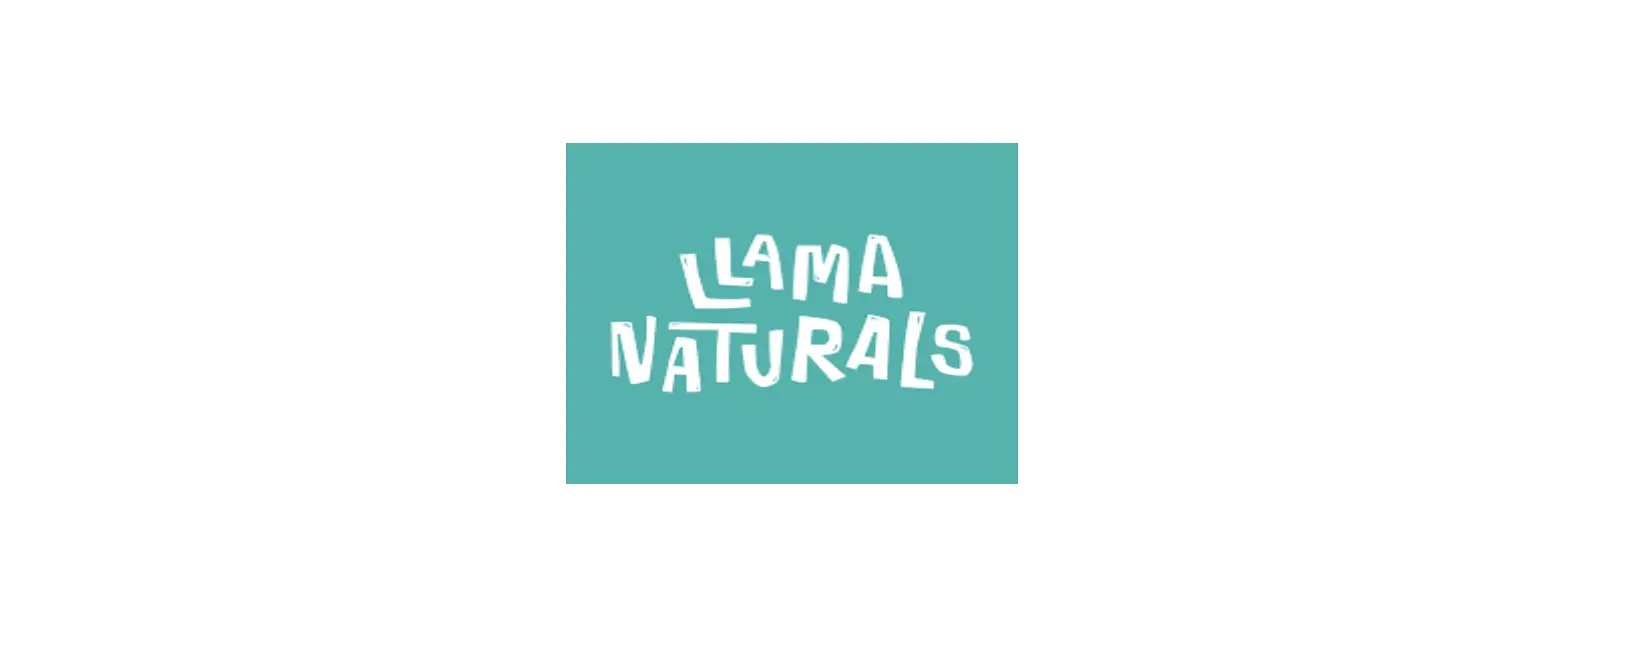 Llama Naturals Discount Code 2022